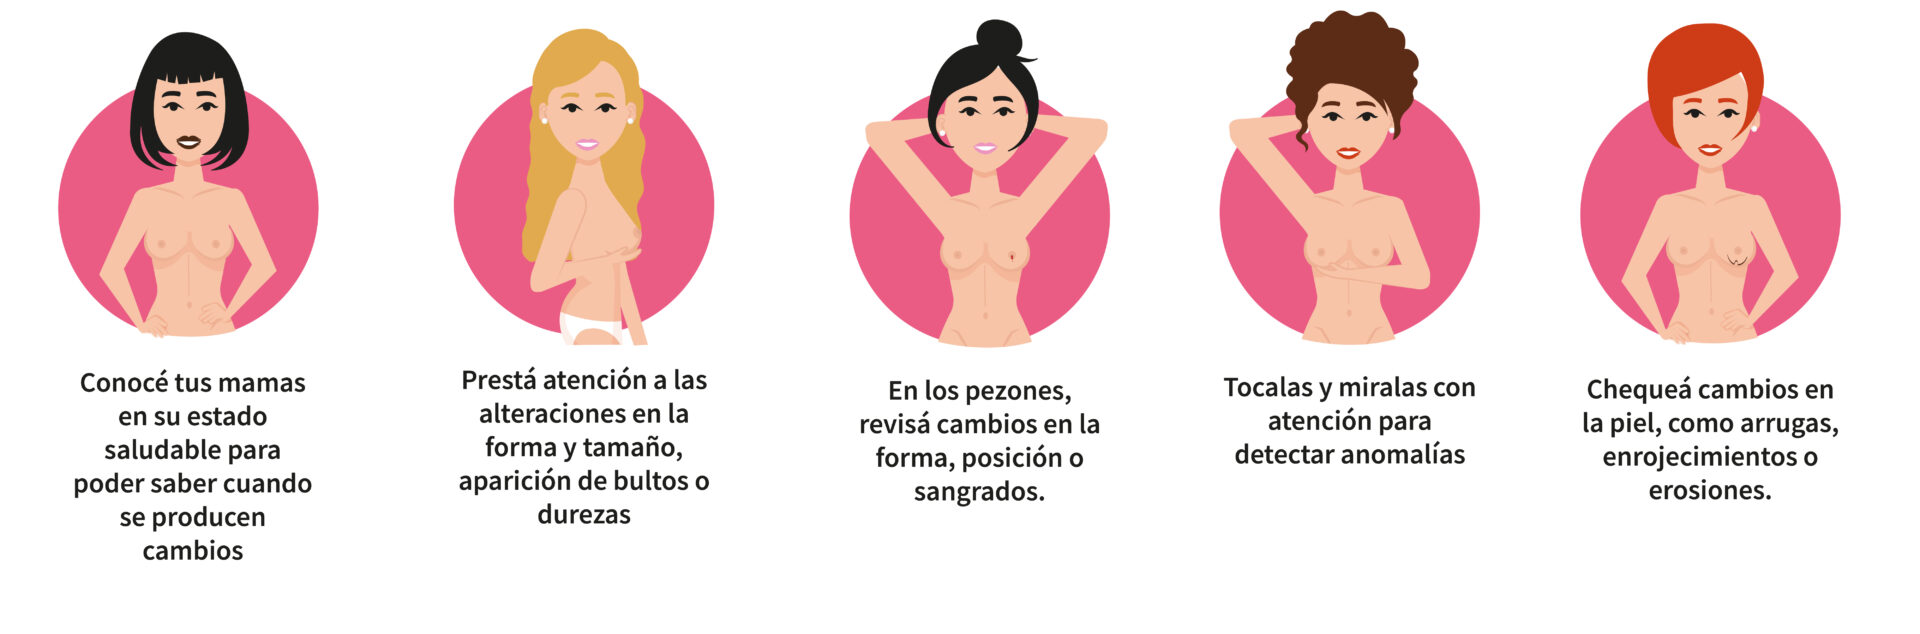 Iconos que muestran el Autoexamen para control de cáncer de mama